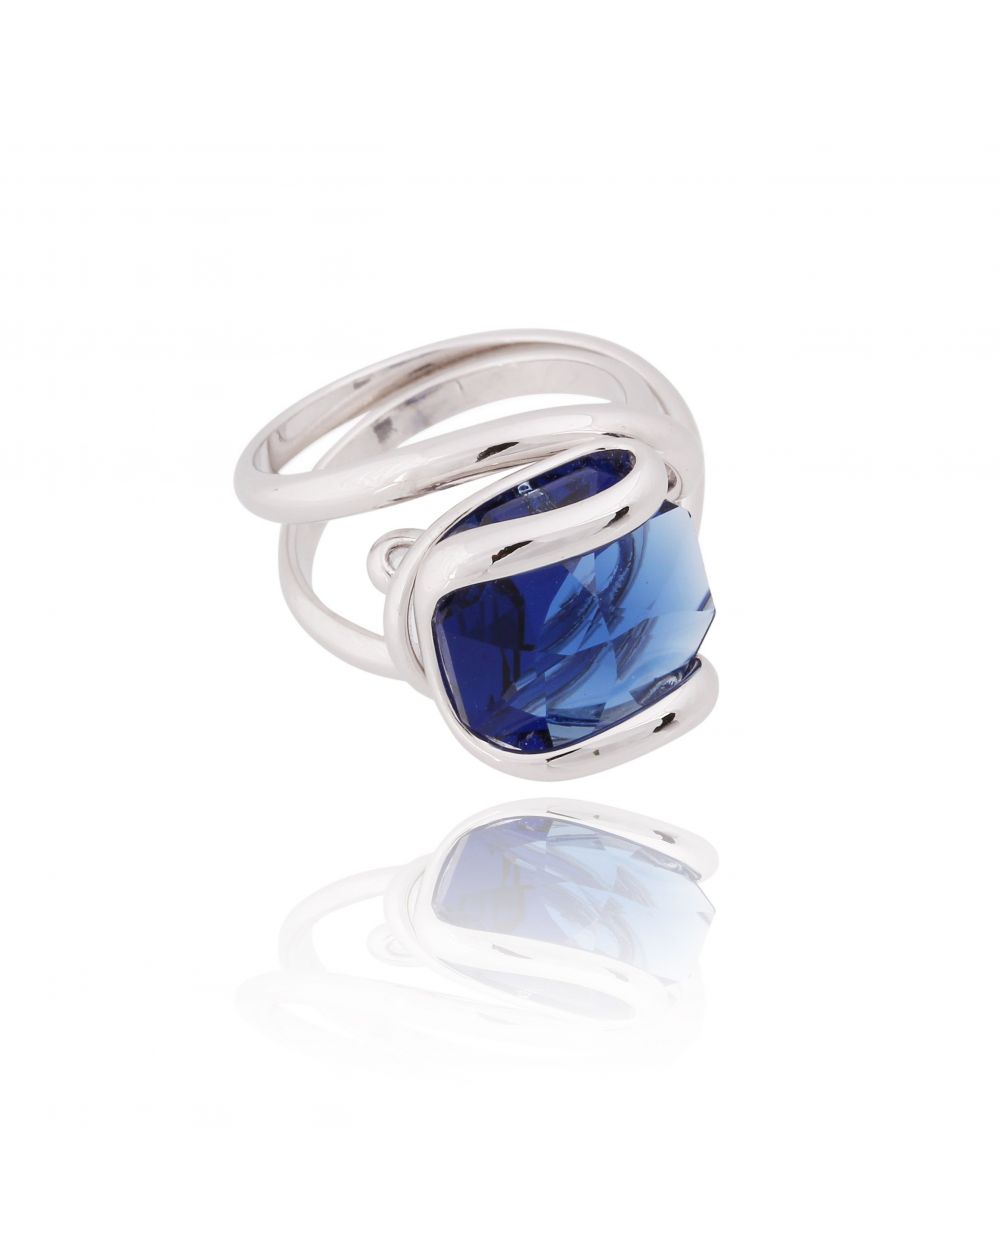 Andrea Marazzini bijoux - Bague cristal Swarovski bleu foncé